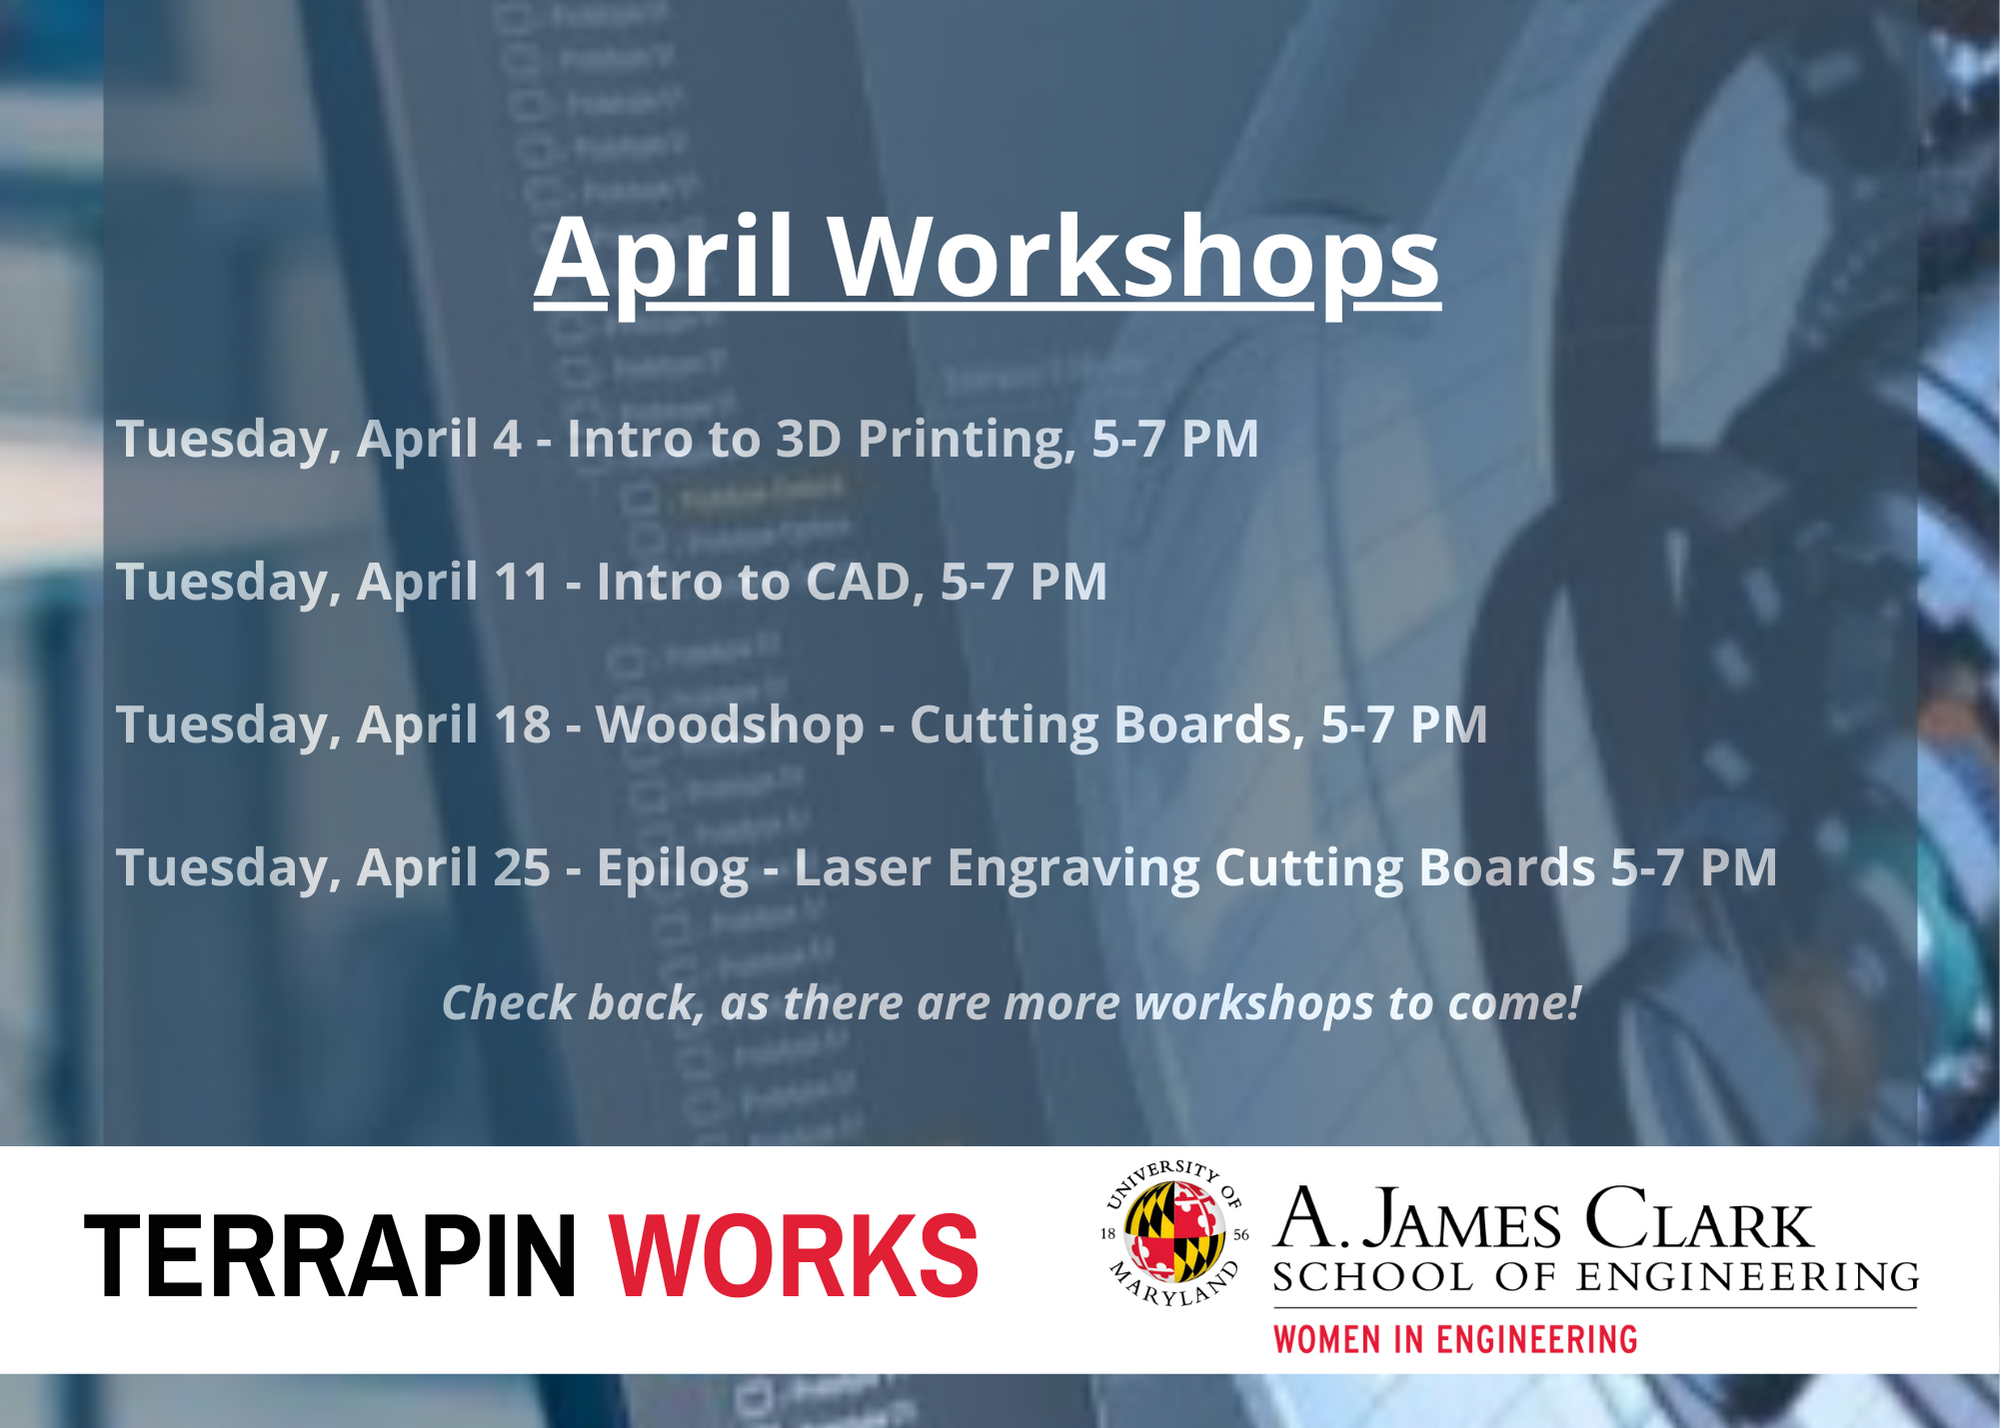 Terrapin Works April Workshops Flyer